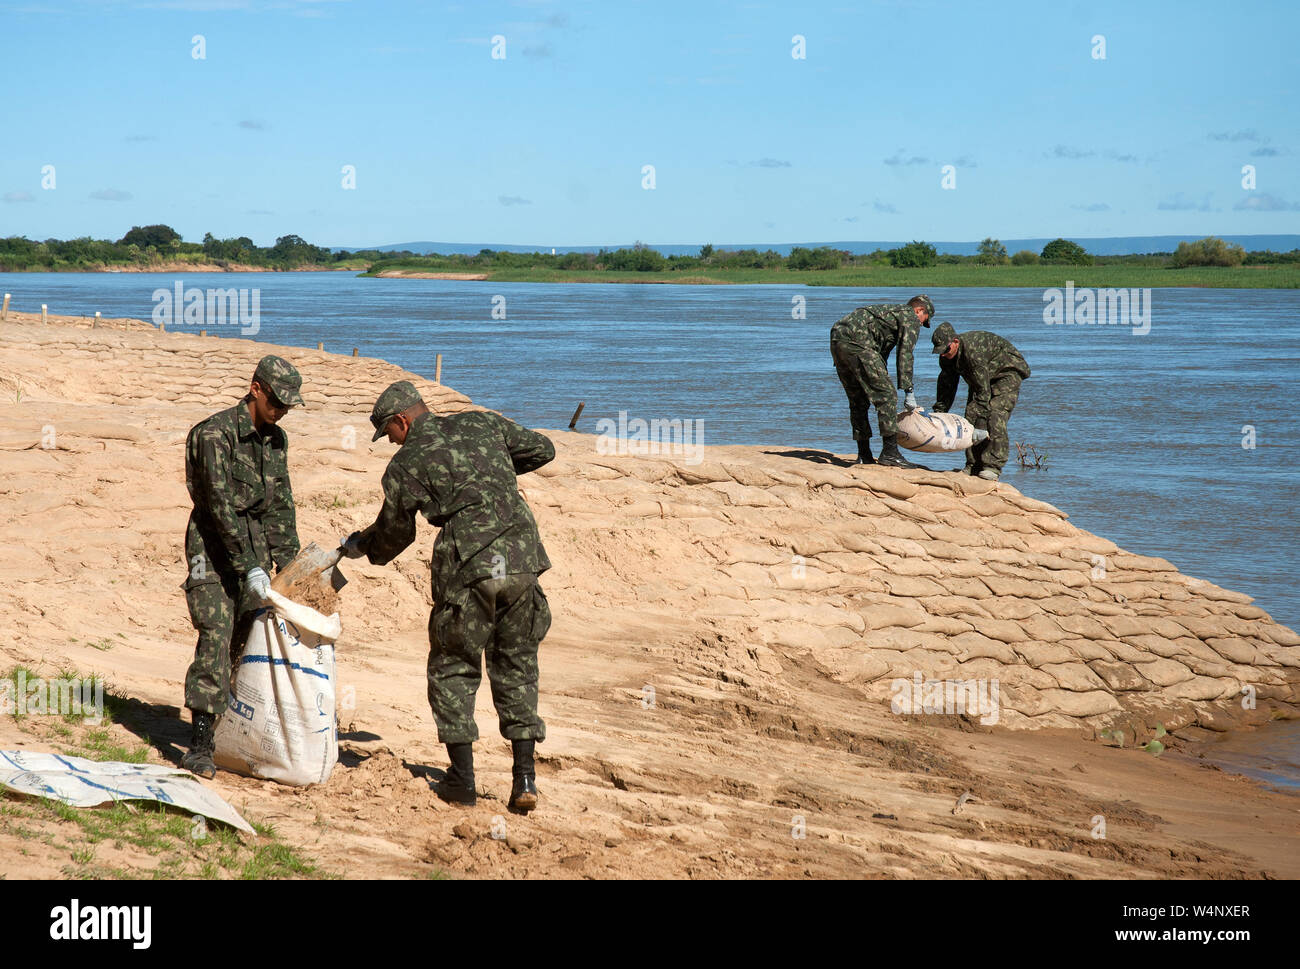 Sandbags Sand Bags Flood Erosion Barrier Hurricane Prep Army Military ACU Camo 